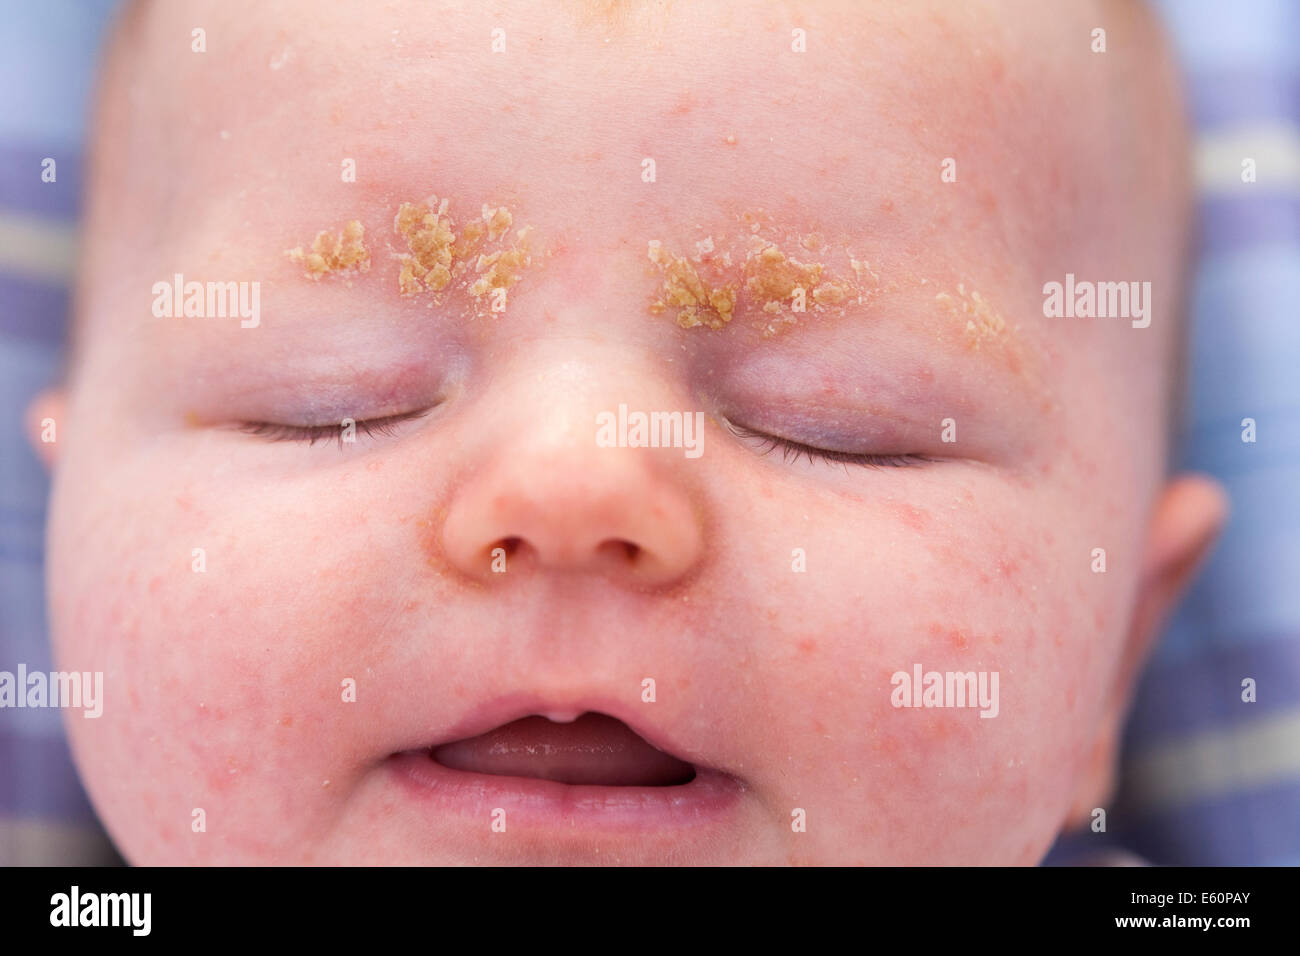 Dermatite Séborrhéique Infantile Banque d'image et photos - Alamy